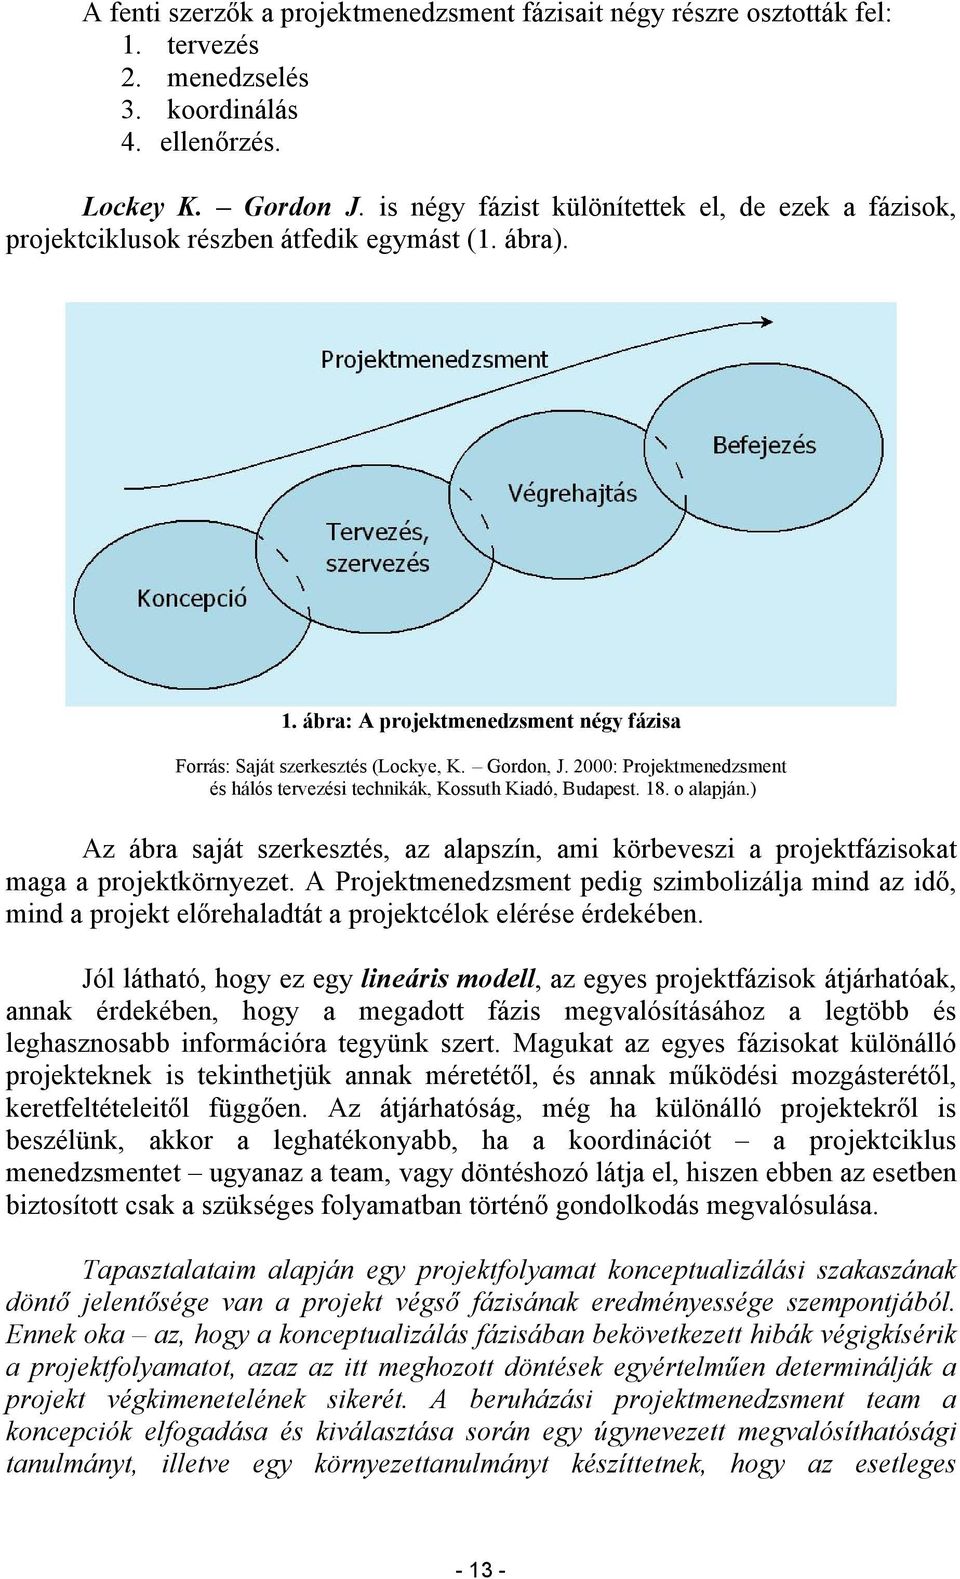 2000: Projektmenedzsment és hálós tervezési technikák, Kossuth Kiadó, Budapest. 18. o alapján.) Az ábra saját szerkesztés, az alapszín, ami körbeveszi a projektfázisokat maga a projektkörnyezet.